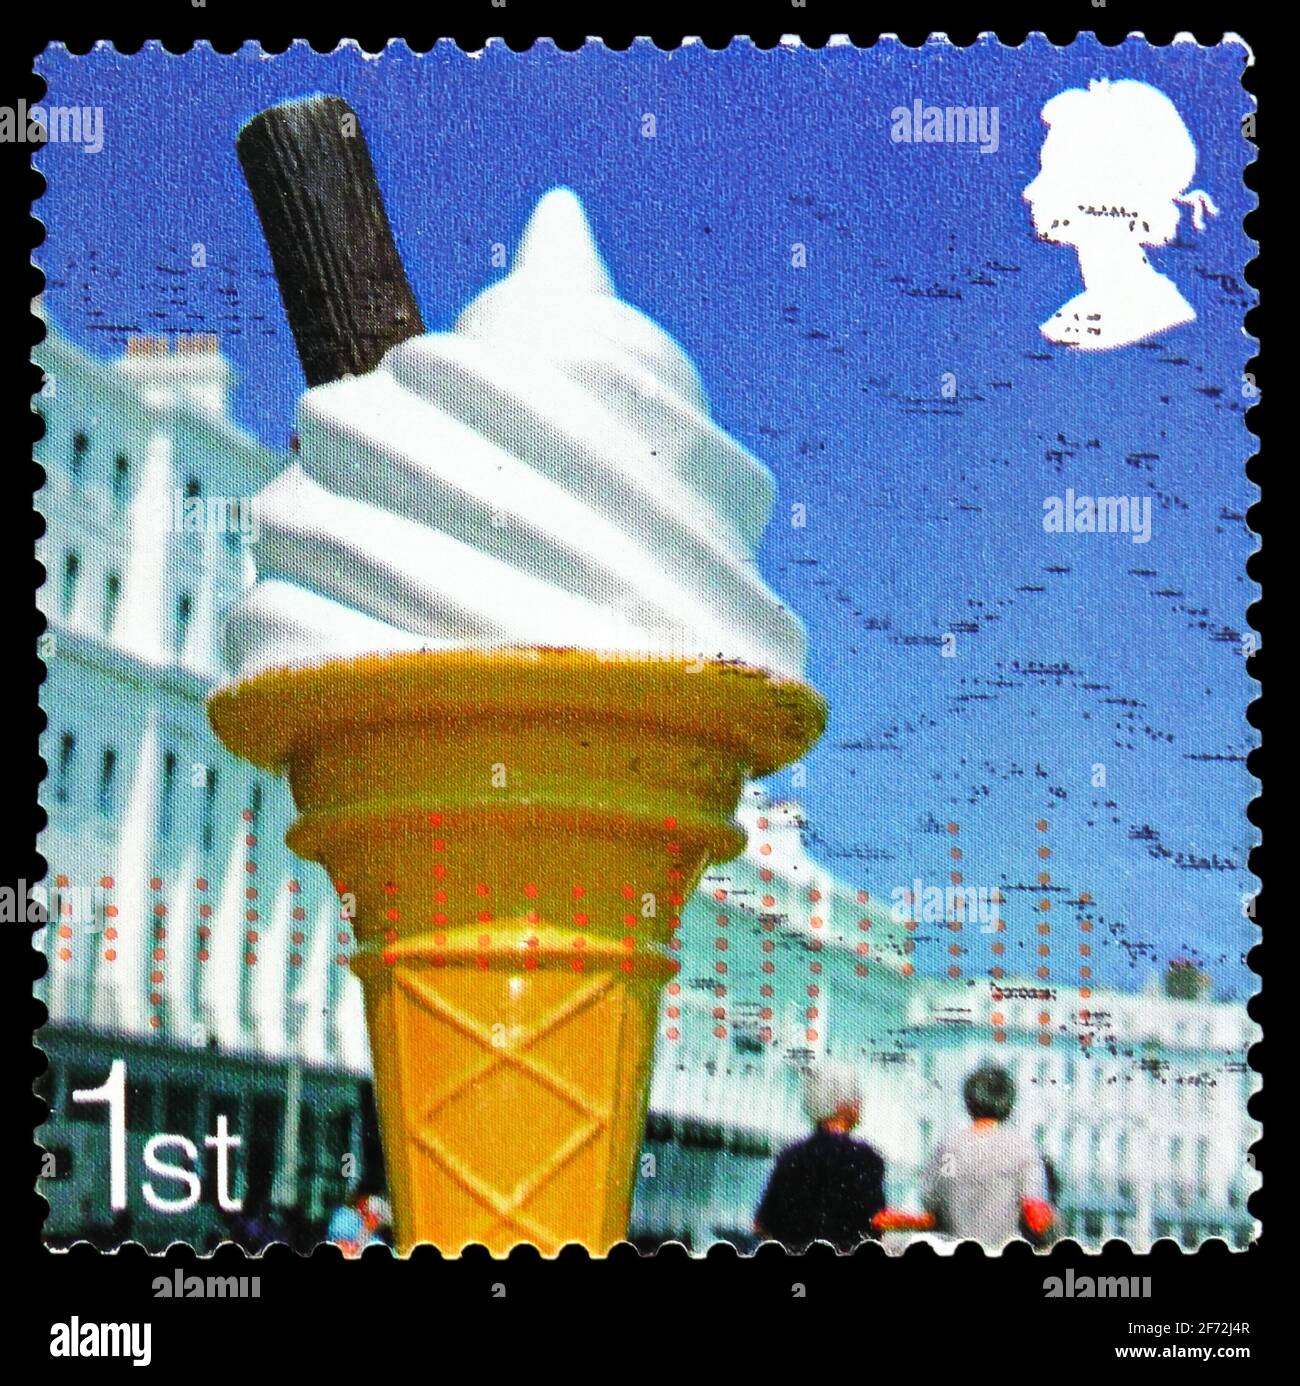 MOSCOU, RUSSIE - 22 DÉCEMBRE 2020: Timbre-poste imprimé au Royaume-Uni montre le cône de glace, à côté de la série de la Mer, vers 2007 Banque D'Images